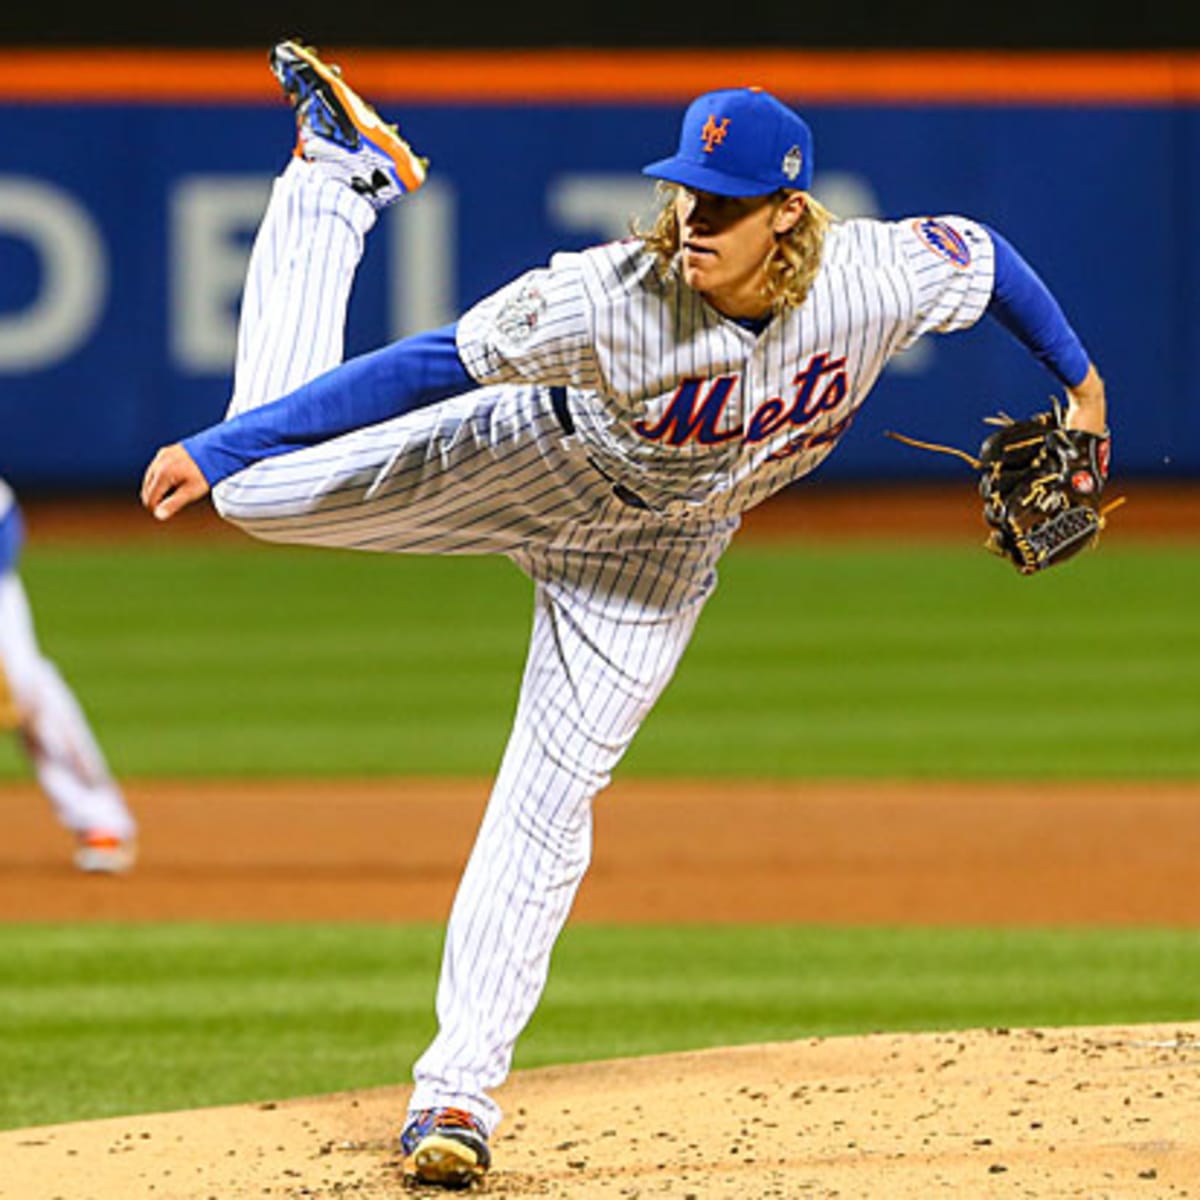 New York Mets video: Noah Syndergaard breaks bat on swing and miss